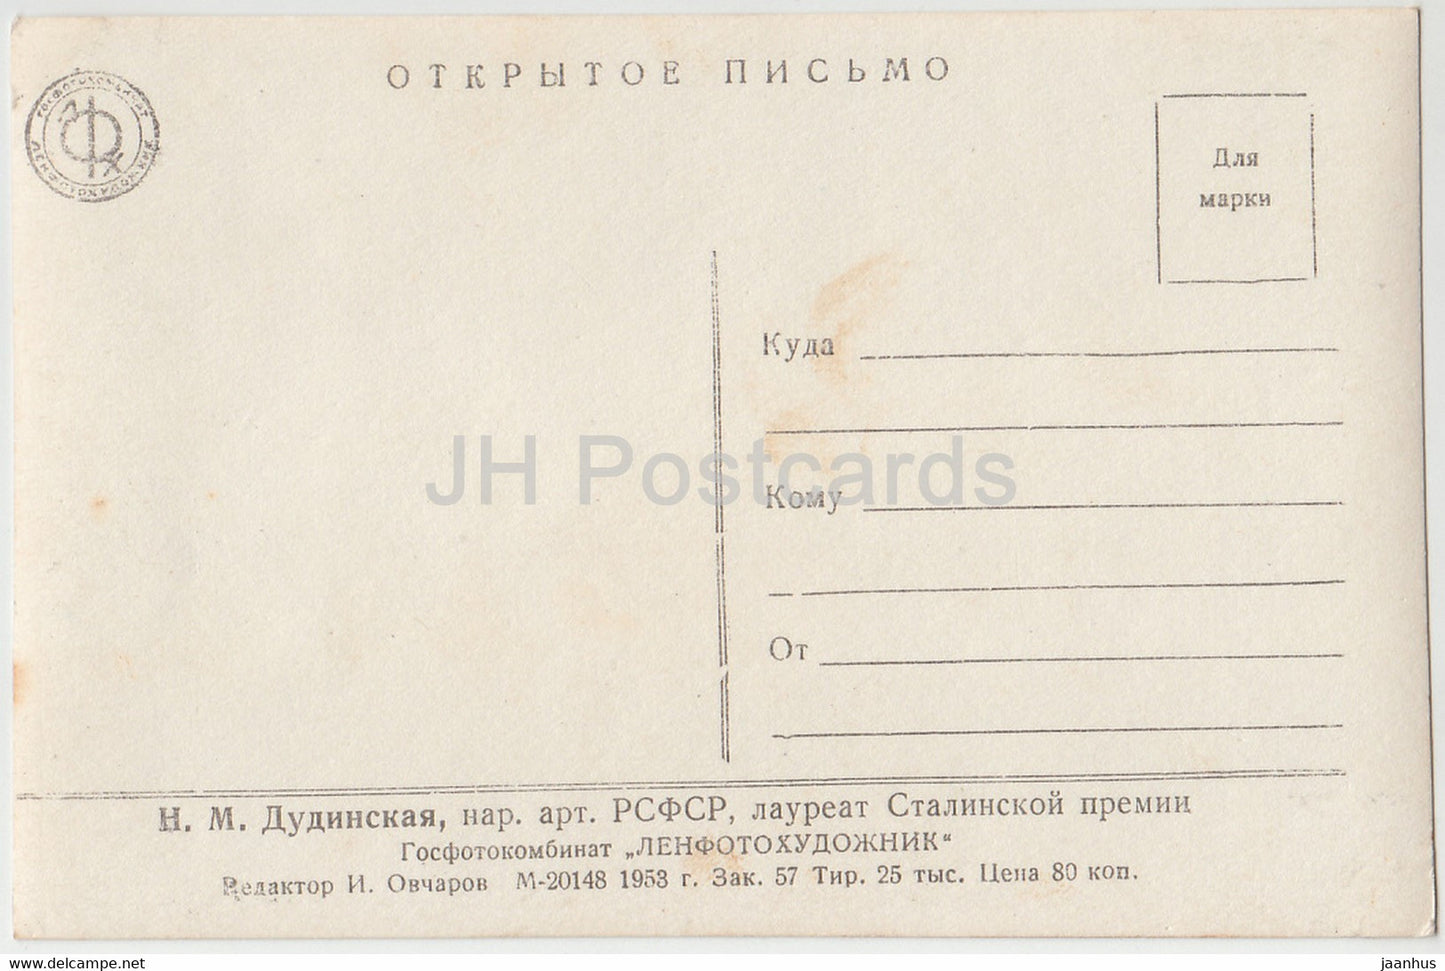 Russische Ballerina Natalia Dudinskaya – Ballett – Tanz – 1953 – alte Postkarte – Russland UdSSR – unbenutzt